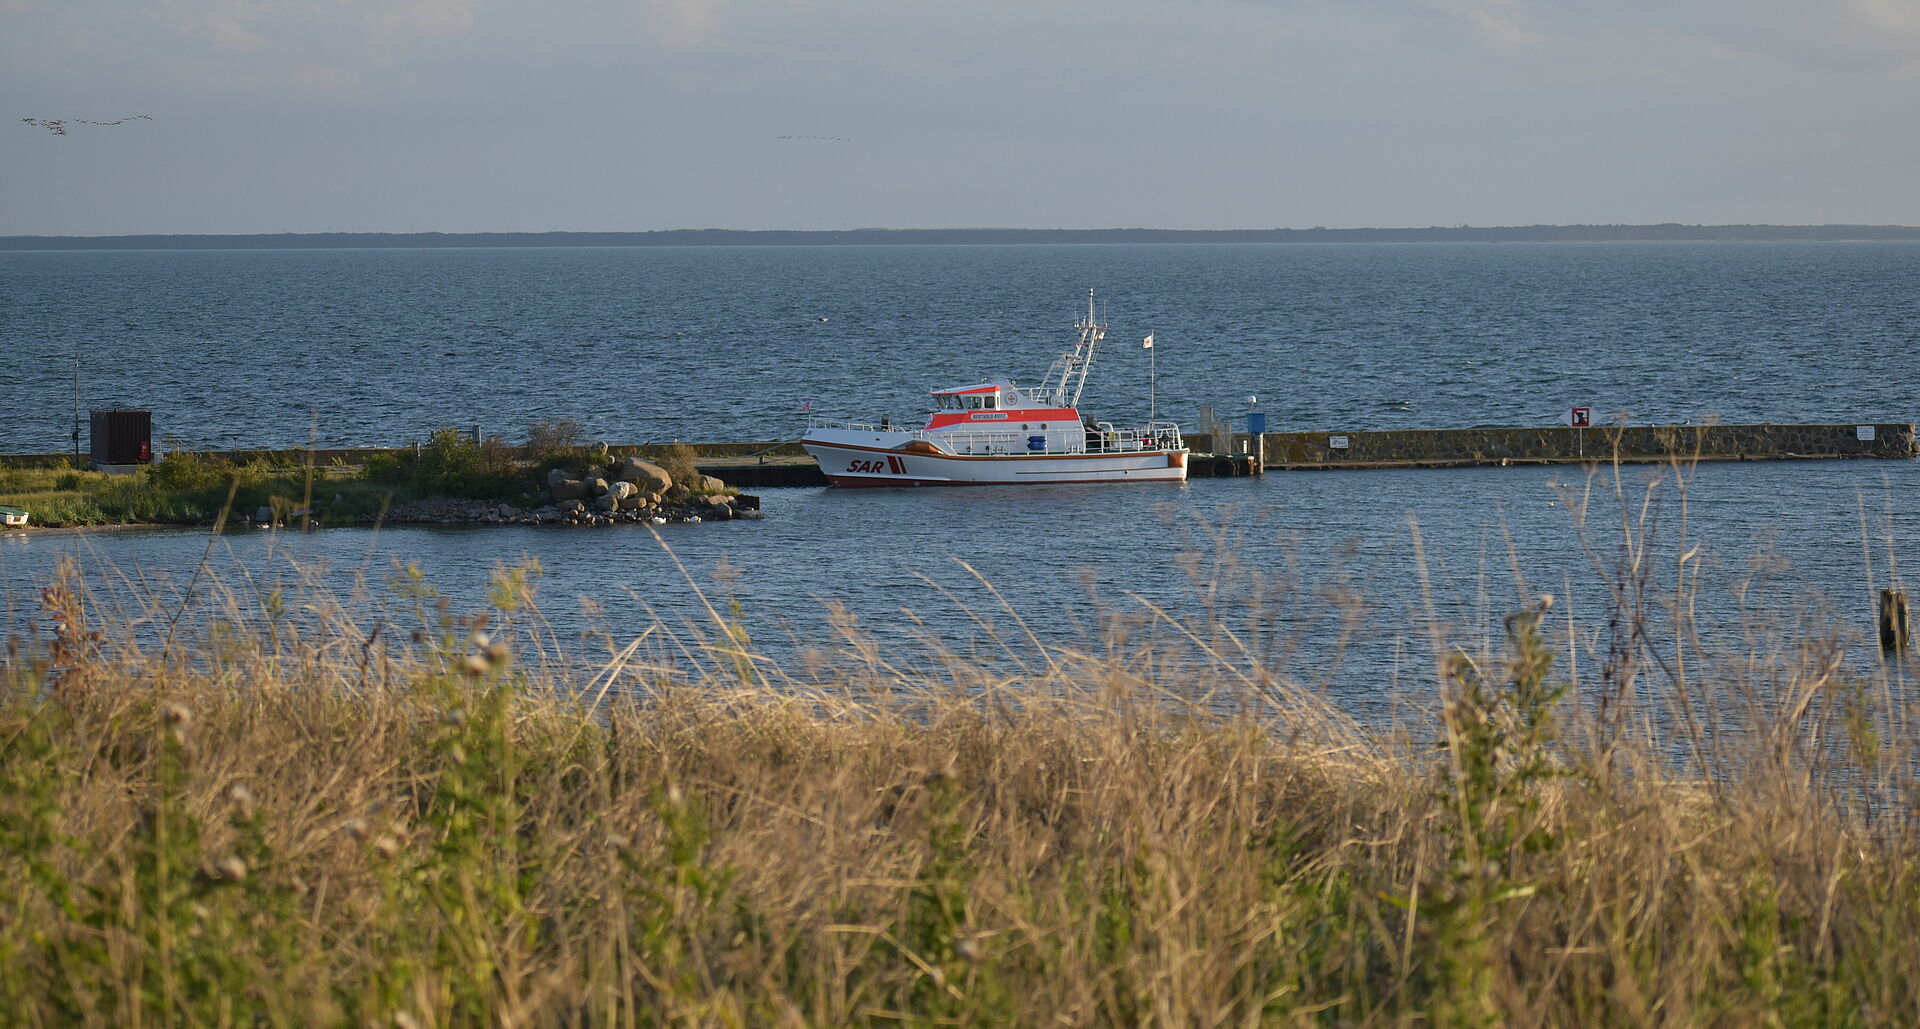 An der Steinmole des einsamen Inselhafens hat der Seenotrettungskreuzer festgemacht.